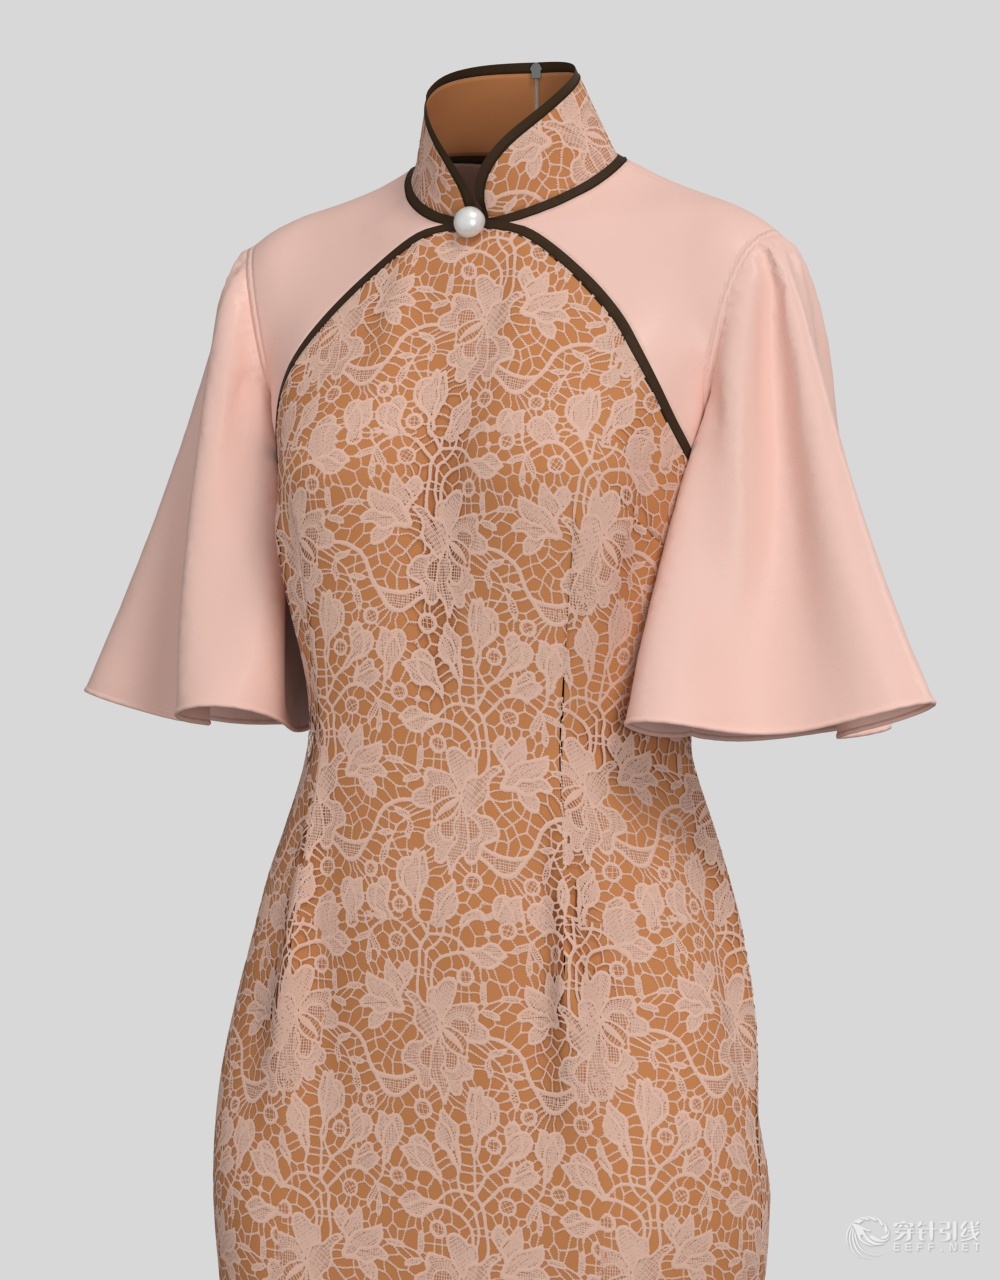 原创服装3d设计图一个旗袍版到底可以有多少种花样